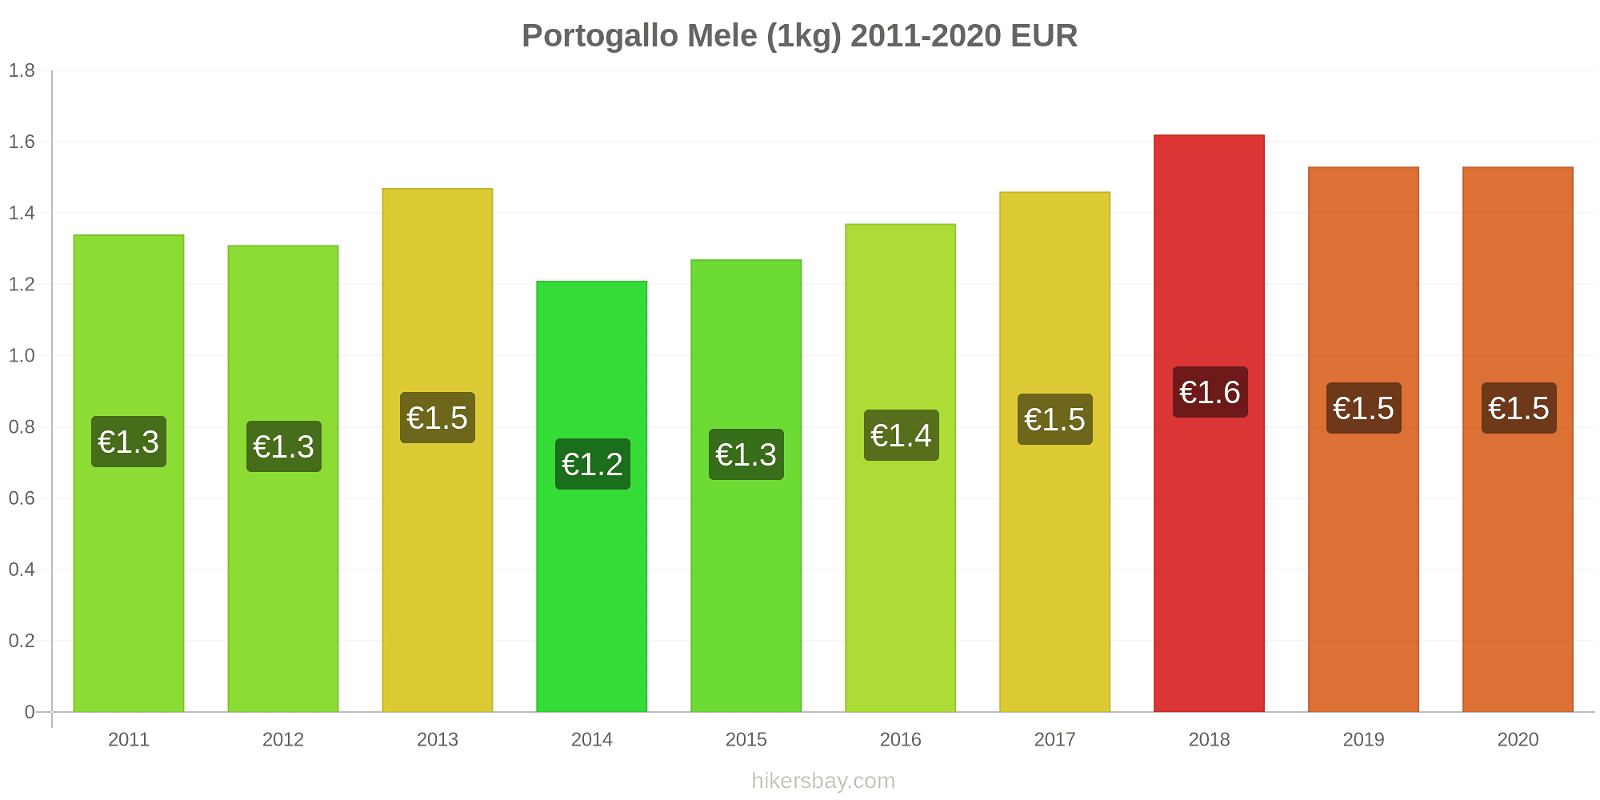 Portogallo variazioni di prezzo Mele (1kg) hikersbay.com